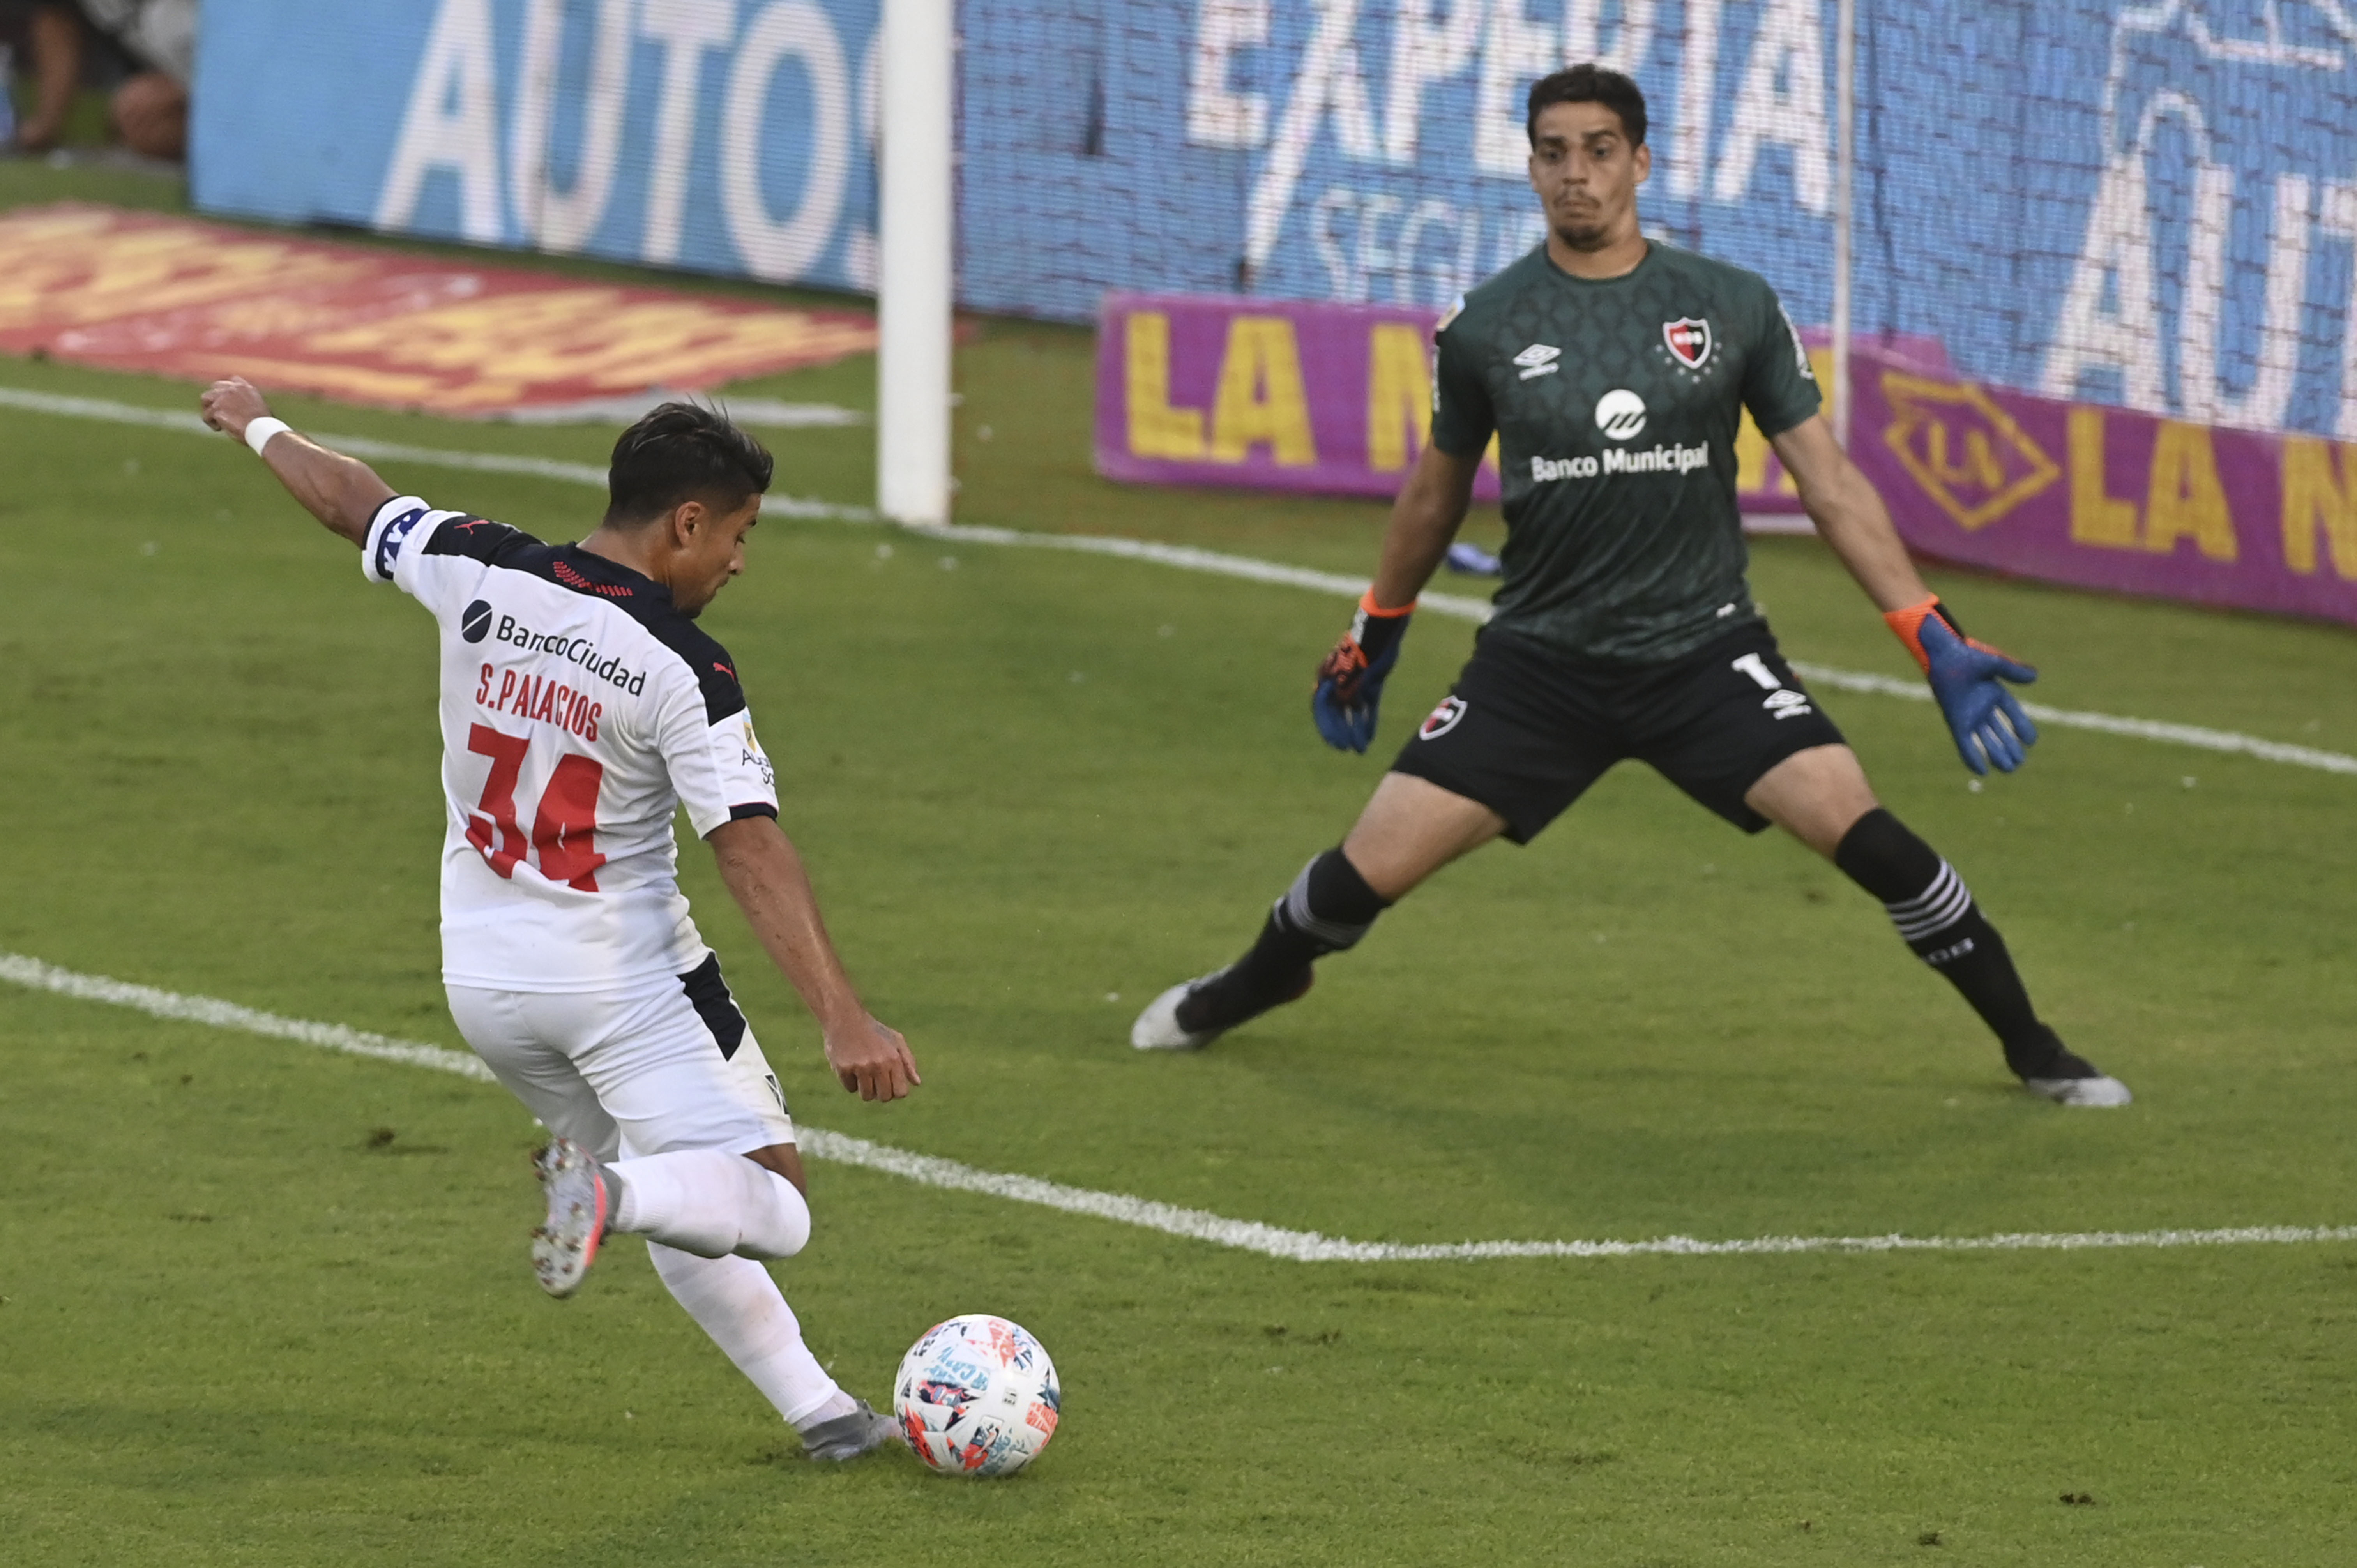 Sebastián Palacios somete a Aguerre y marca el primer gol de Independiente. Iban 9 minutos. (Foto/Télam)